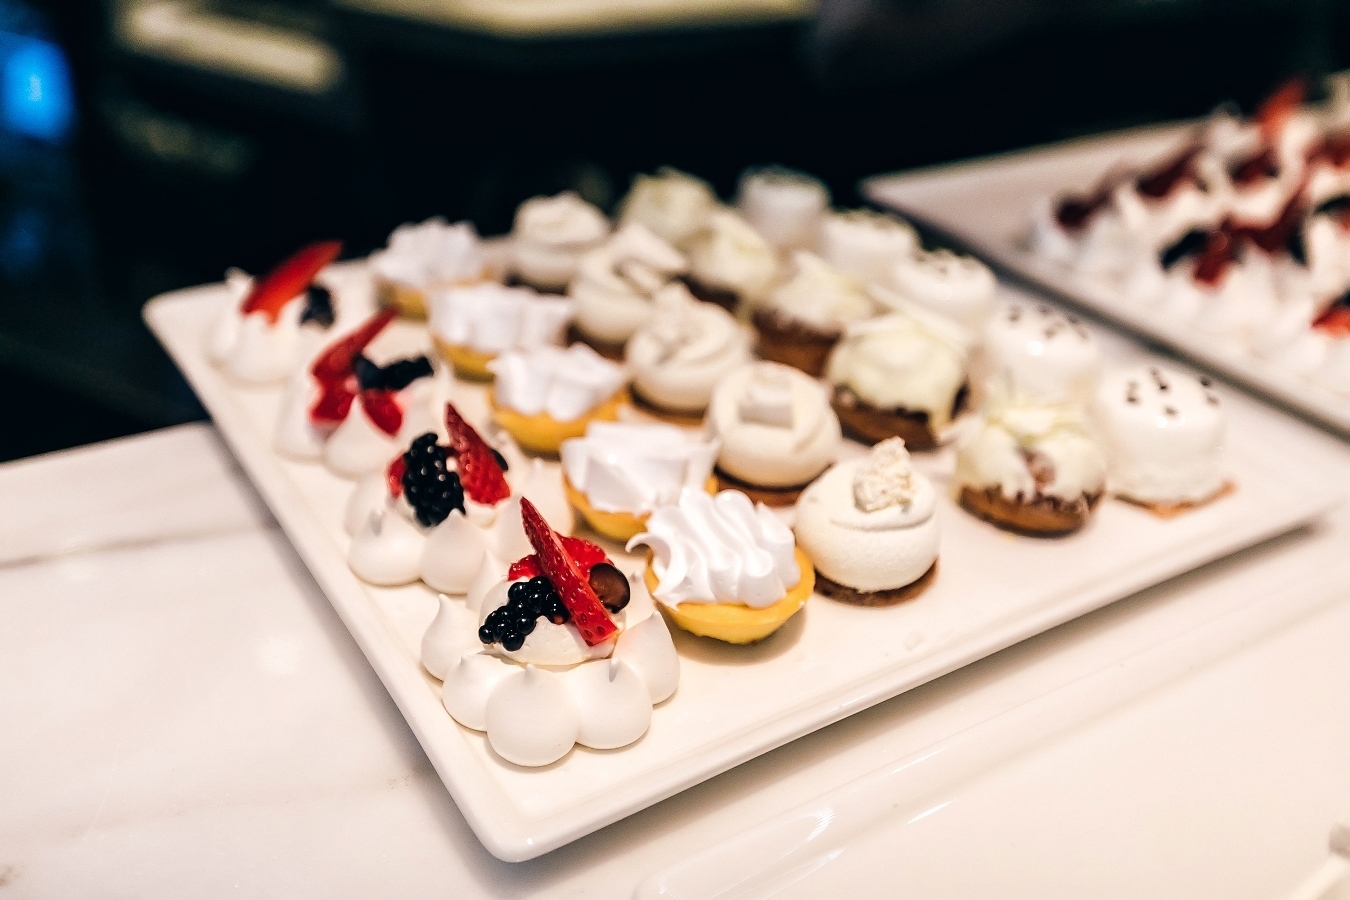 تشكيلة متنوعة من الحلويات الفرنسية في دبي